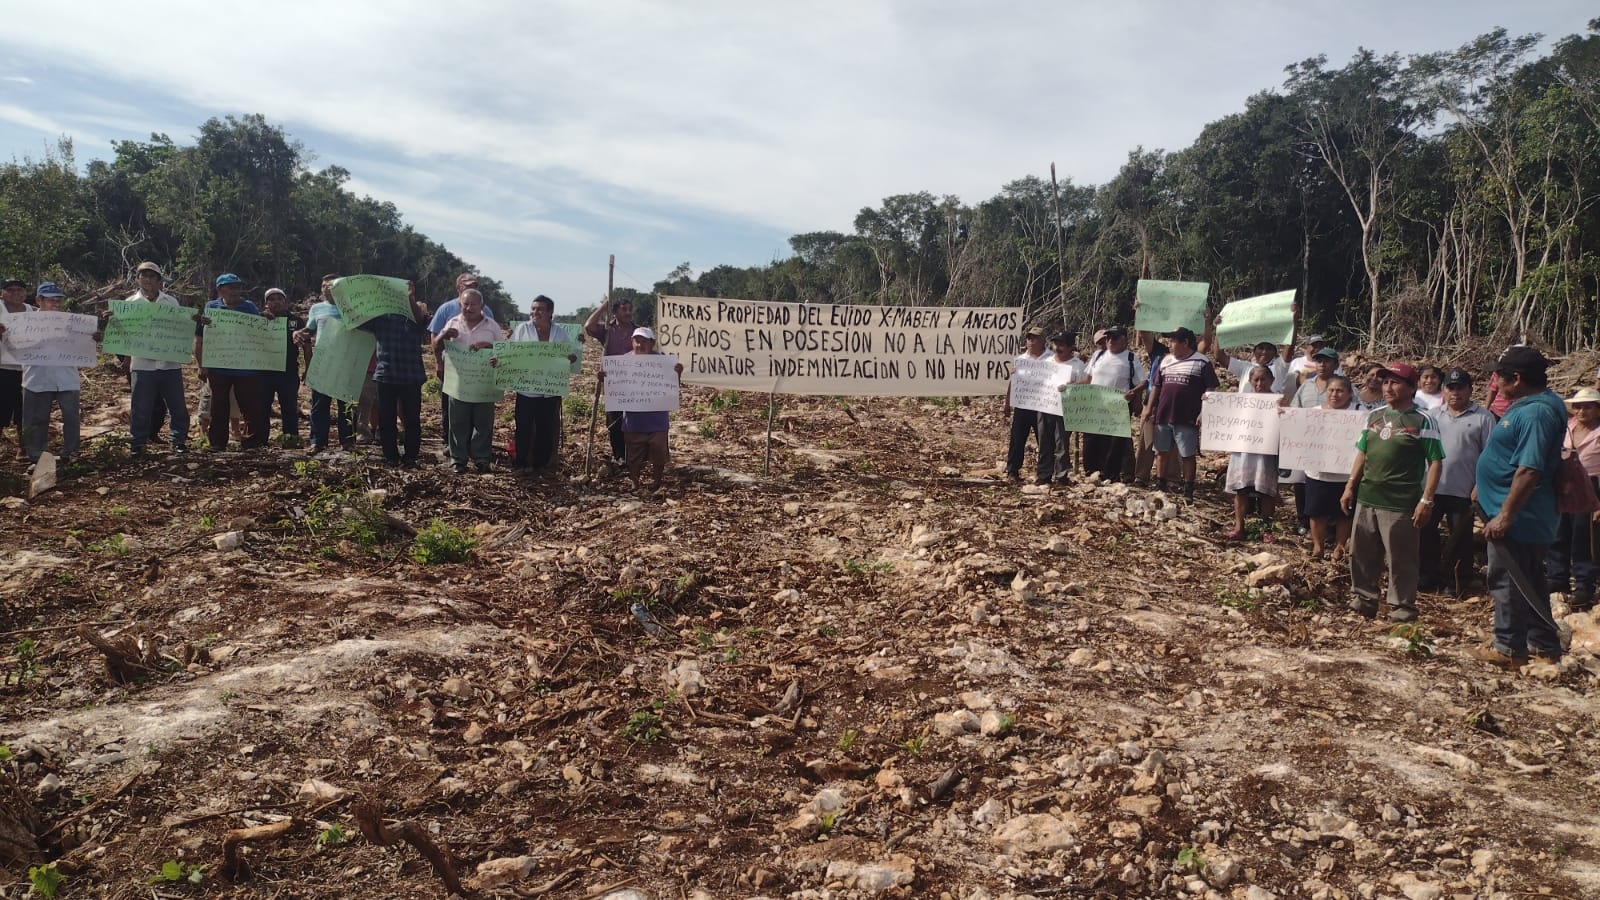 350 ejidatarios de Carrillo Puerto denuncian presunta invasión de tierras por parte de Fonatur